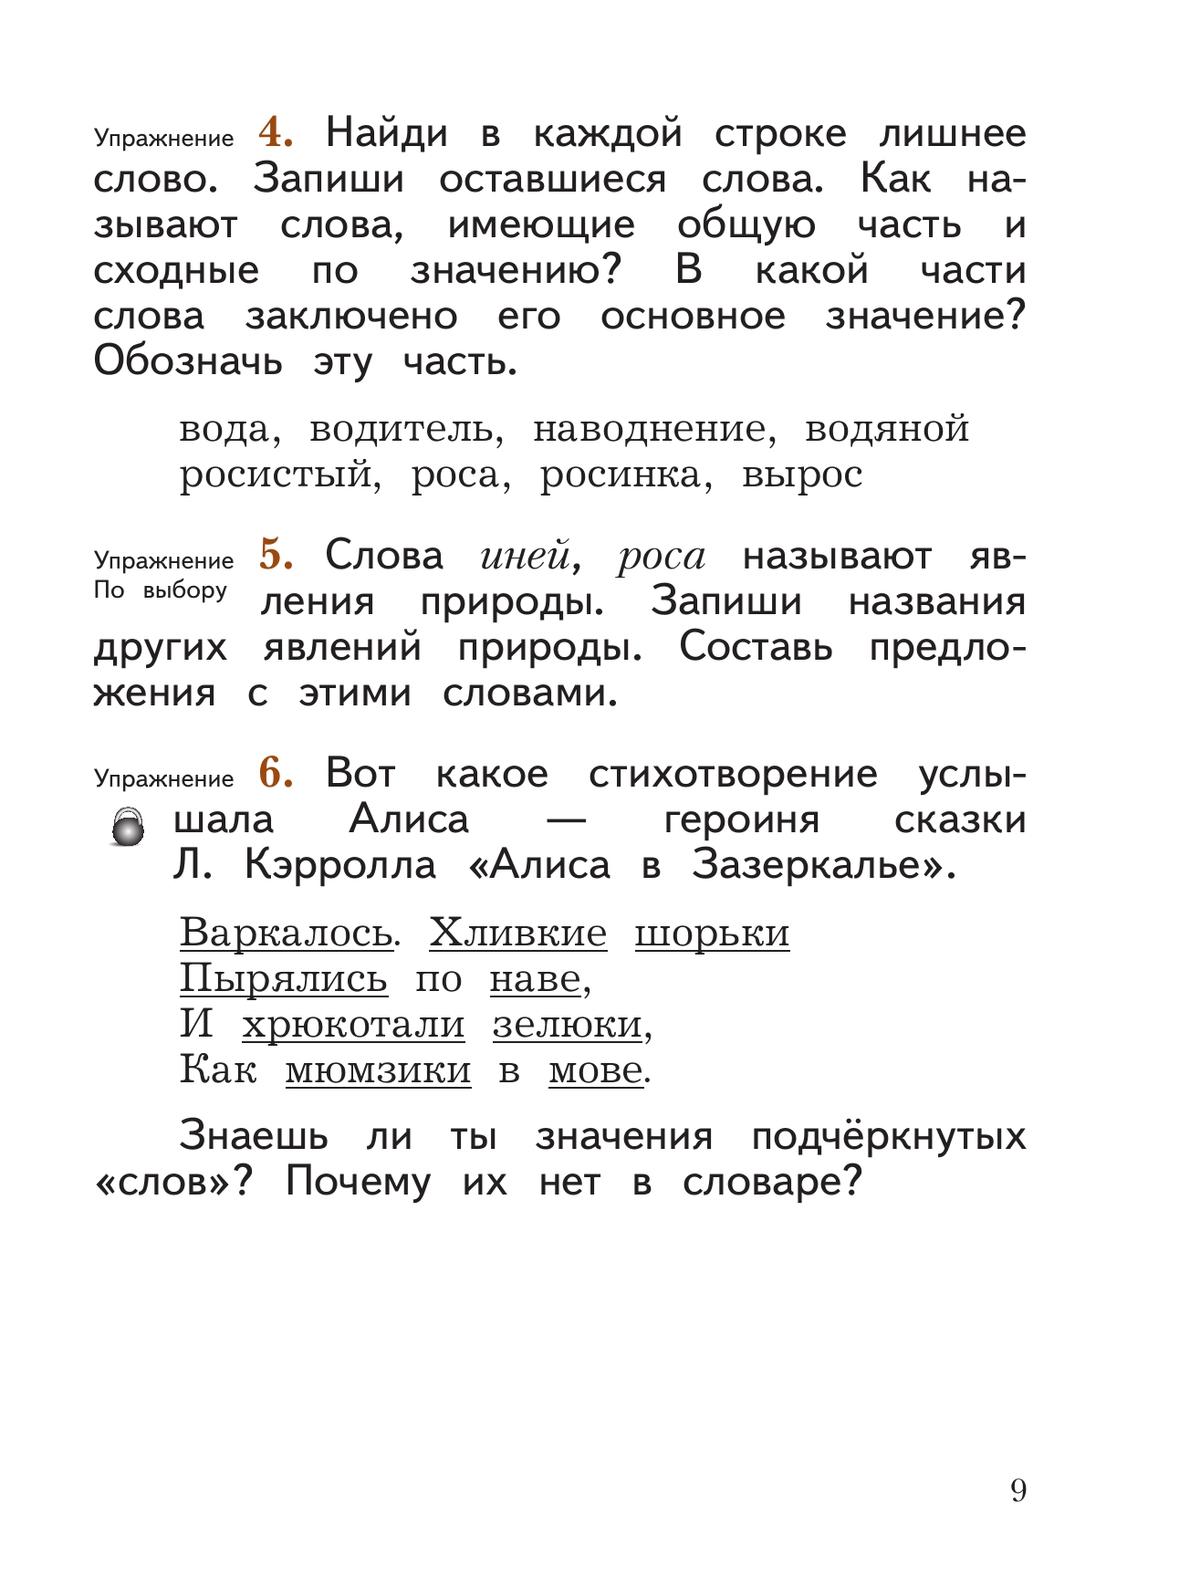 Русский язык. 2 класс. Учебное пособие. В 2 ч. Часть 2 6